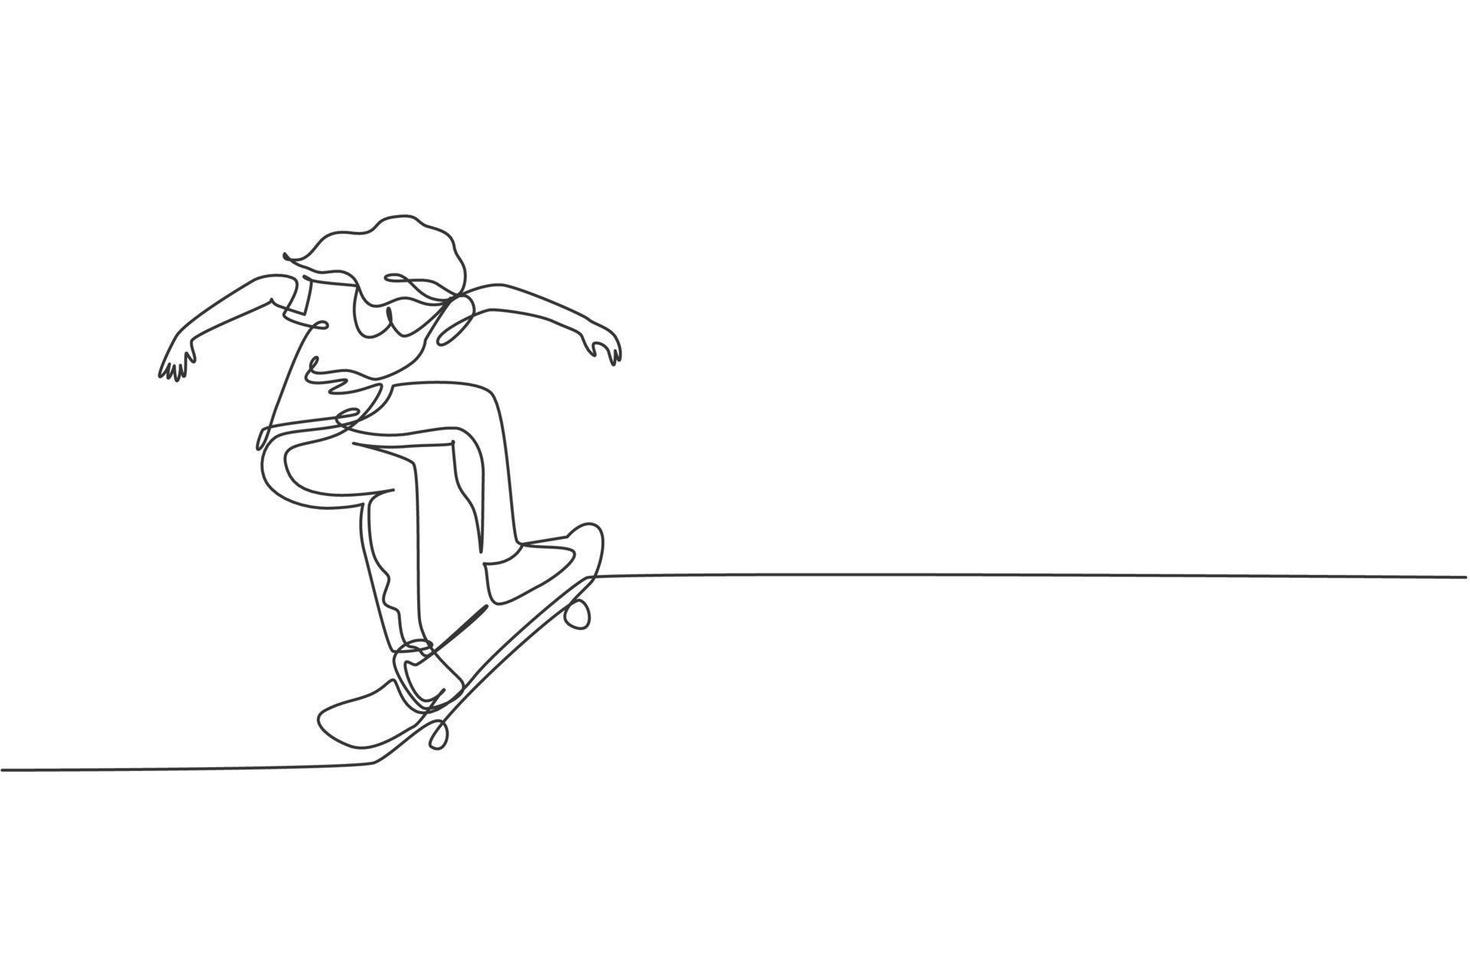 un disegno a linea continua di una giovane donna cool skateboarder in sella a uno skateboard che fa un trucco nello skatepark. concetto di sport estremo per adolescenti. illustrazione vettoriale di disegno grafico dinamico a linea singola